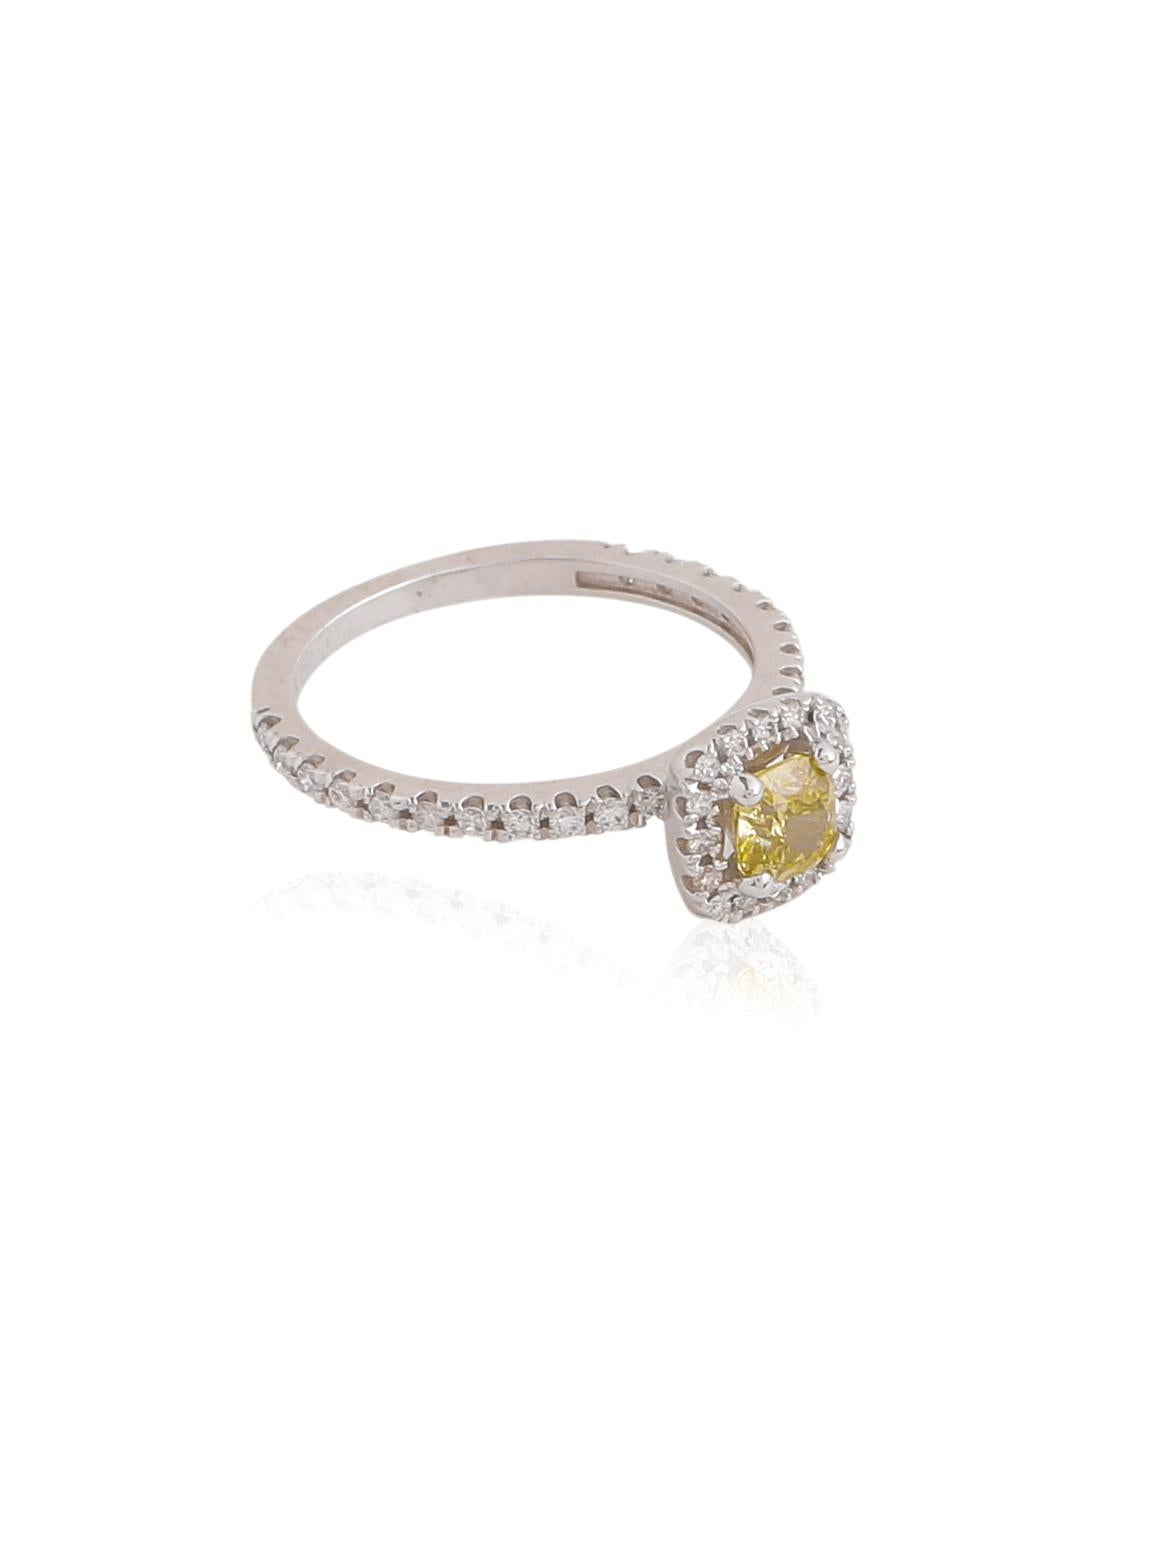 Ein schicker und klassischer Verlobungsring mit einem schönen kissenförmigen GIA-zertifizierten Diamanten in der Mitte und einem Halo aus kleineren Diamanten drum herum. Der Mittelstein hat eine besondere gelbliche Farbe und ist ein hübscher Stein.